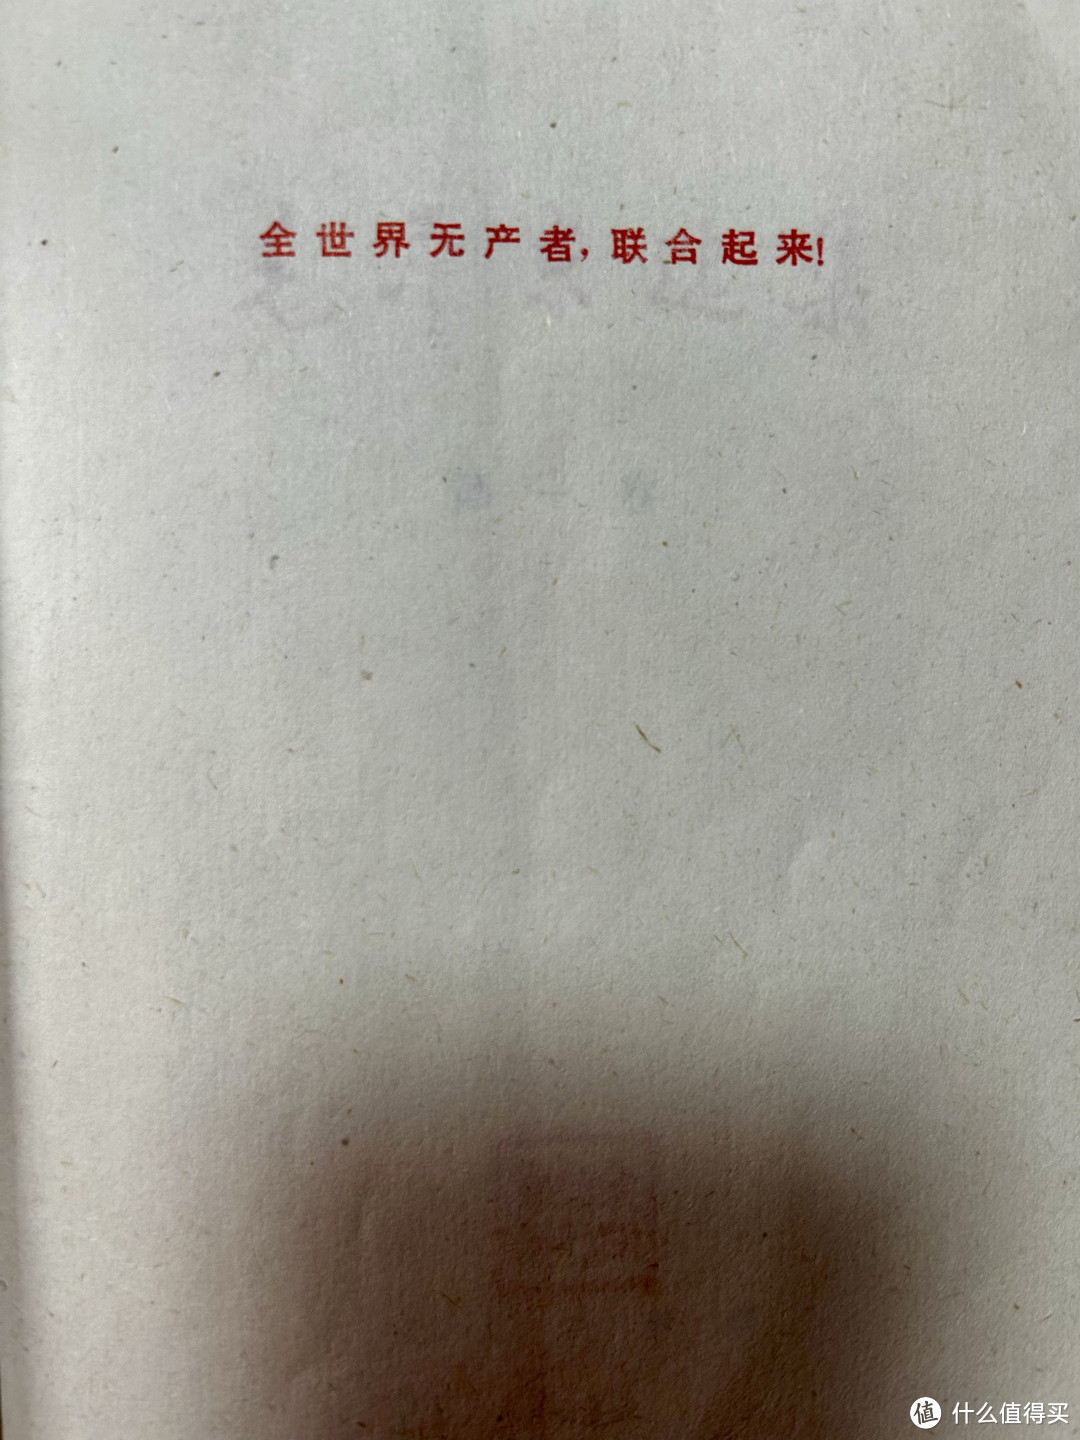 《毛泽东选集》第一卷的《湖南农民运动考察报告》